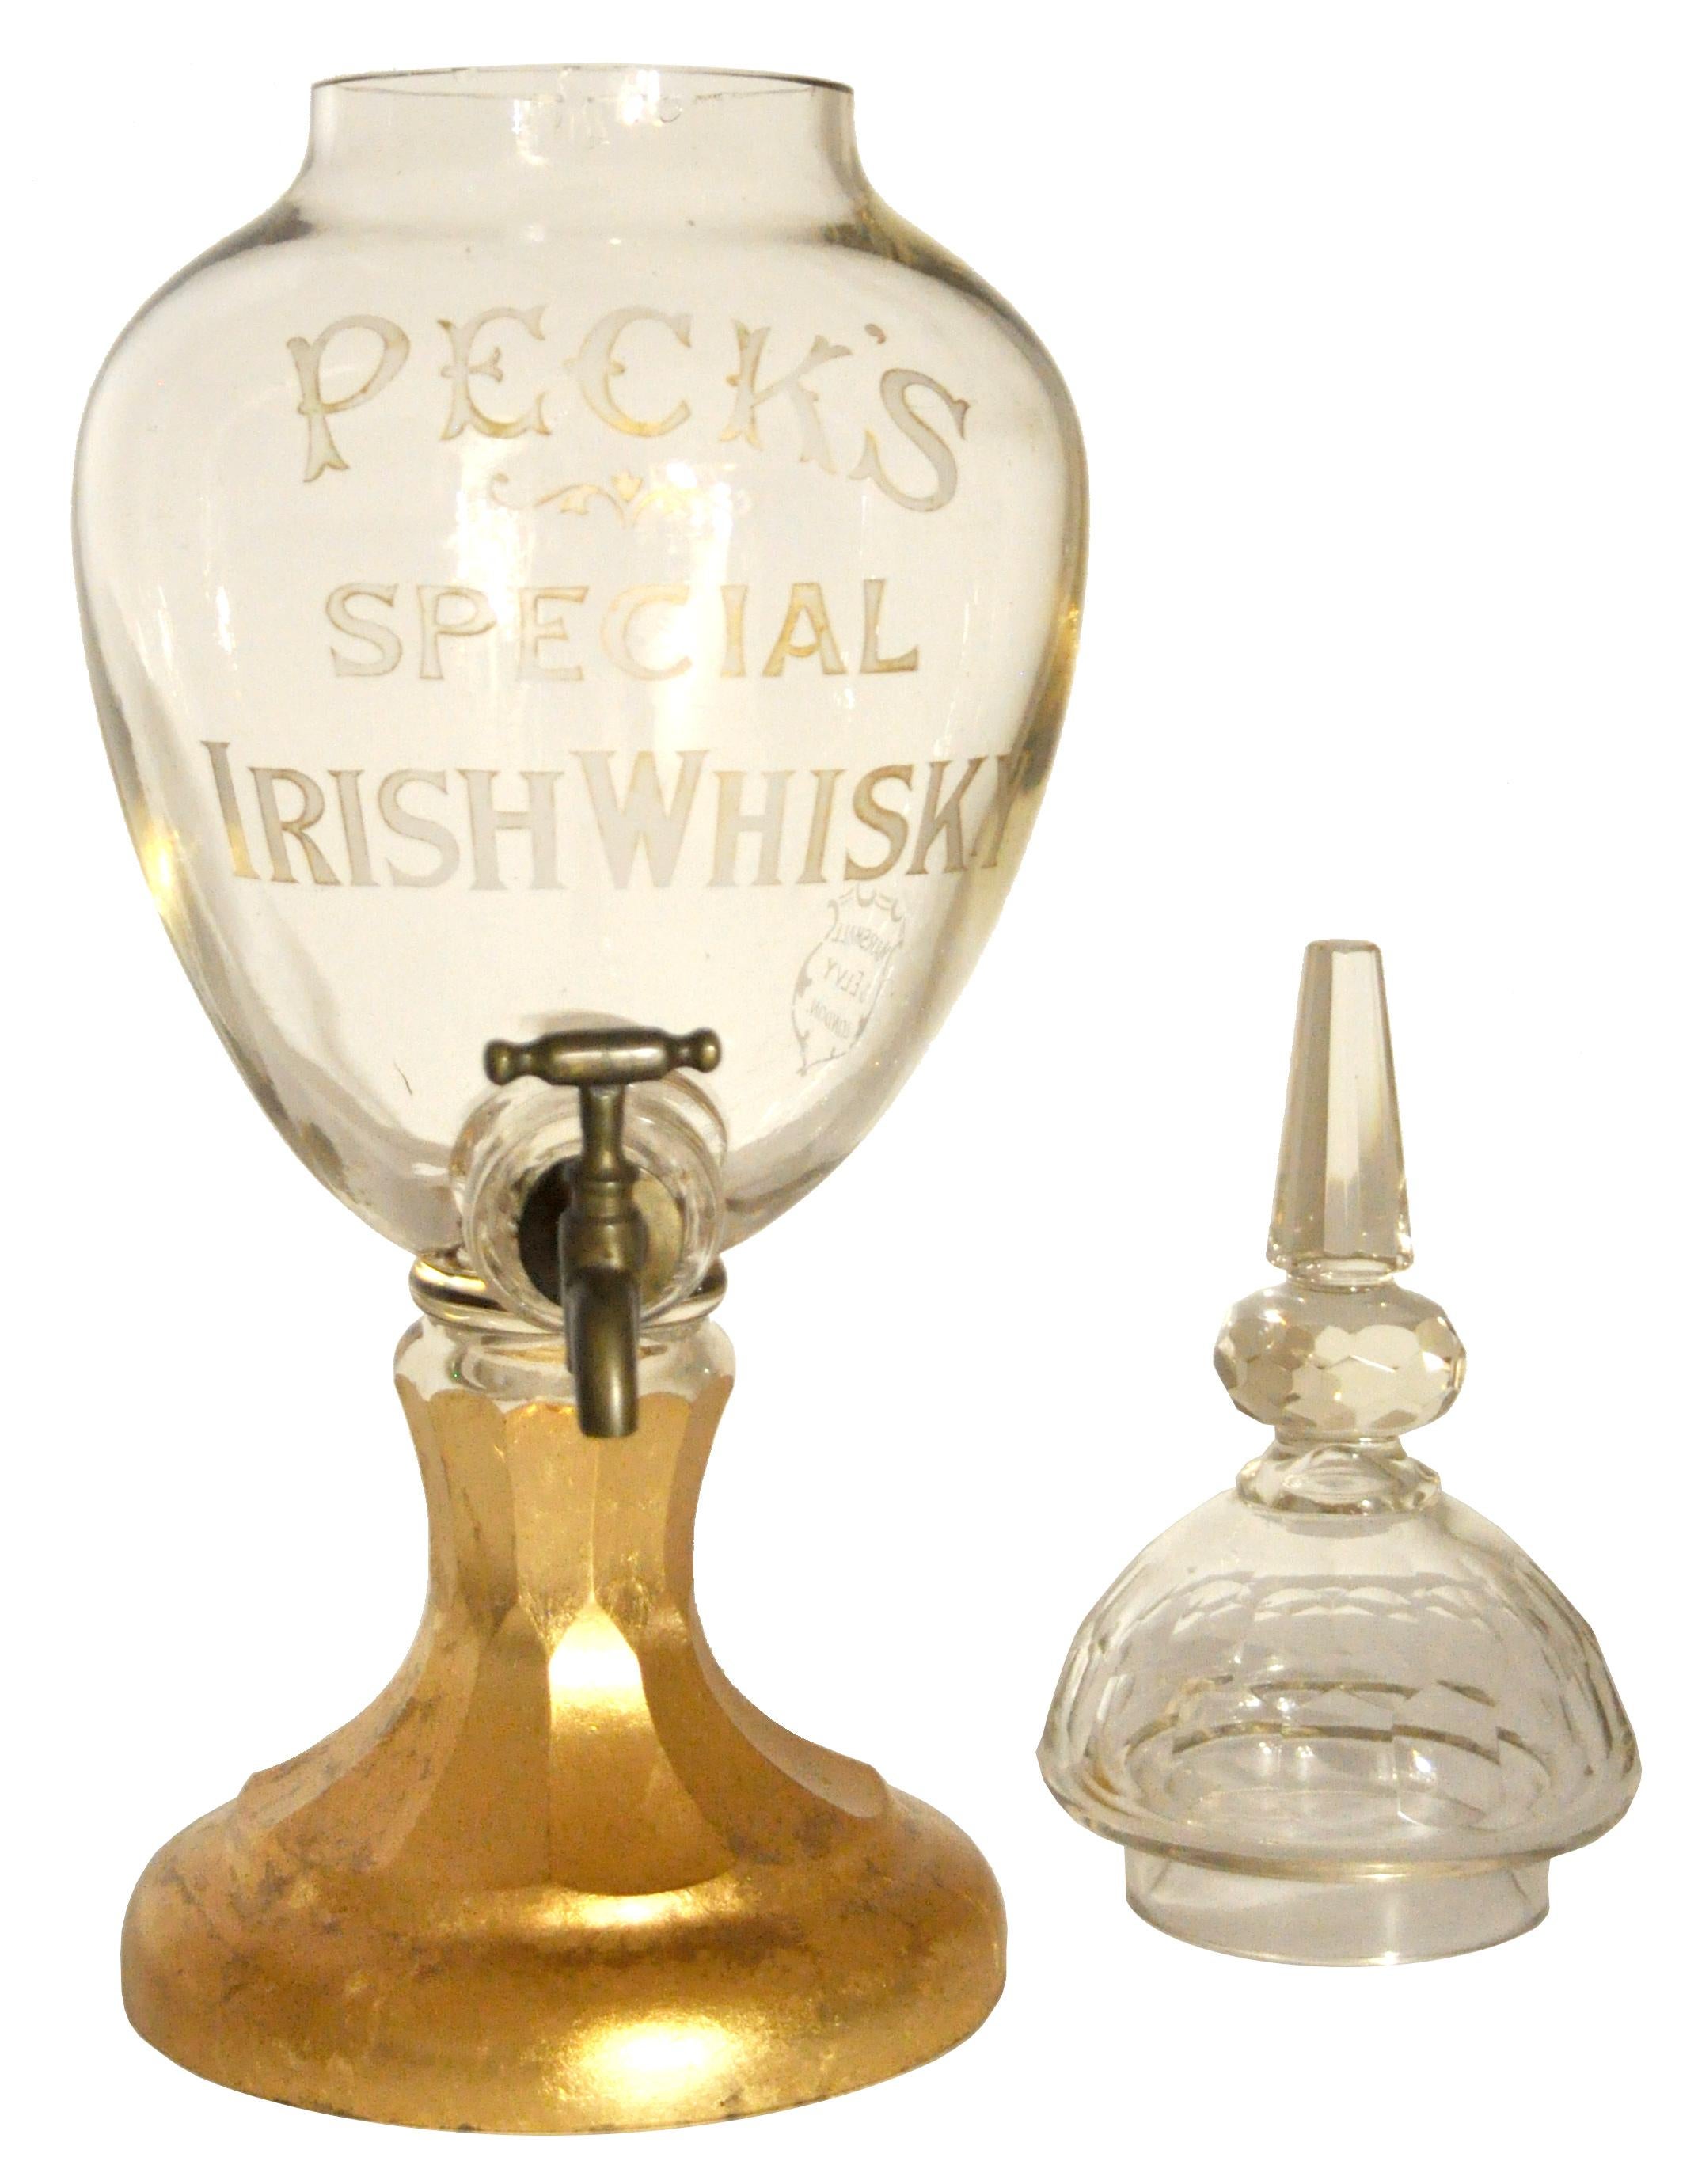 Fin du XIXe siècle Grand décanteur ancien en verre taillé et cristal pour le whisky irlandais Peck's:: 1870